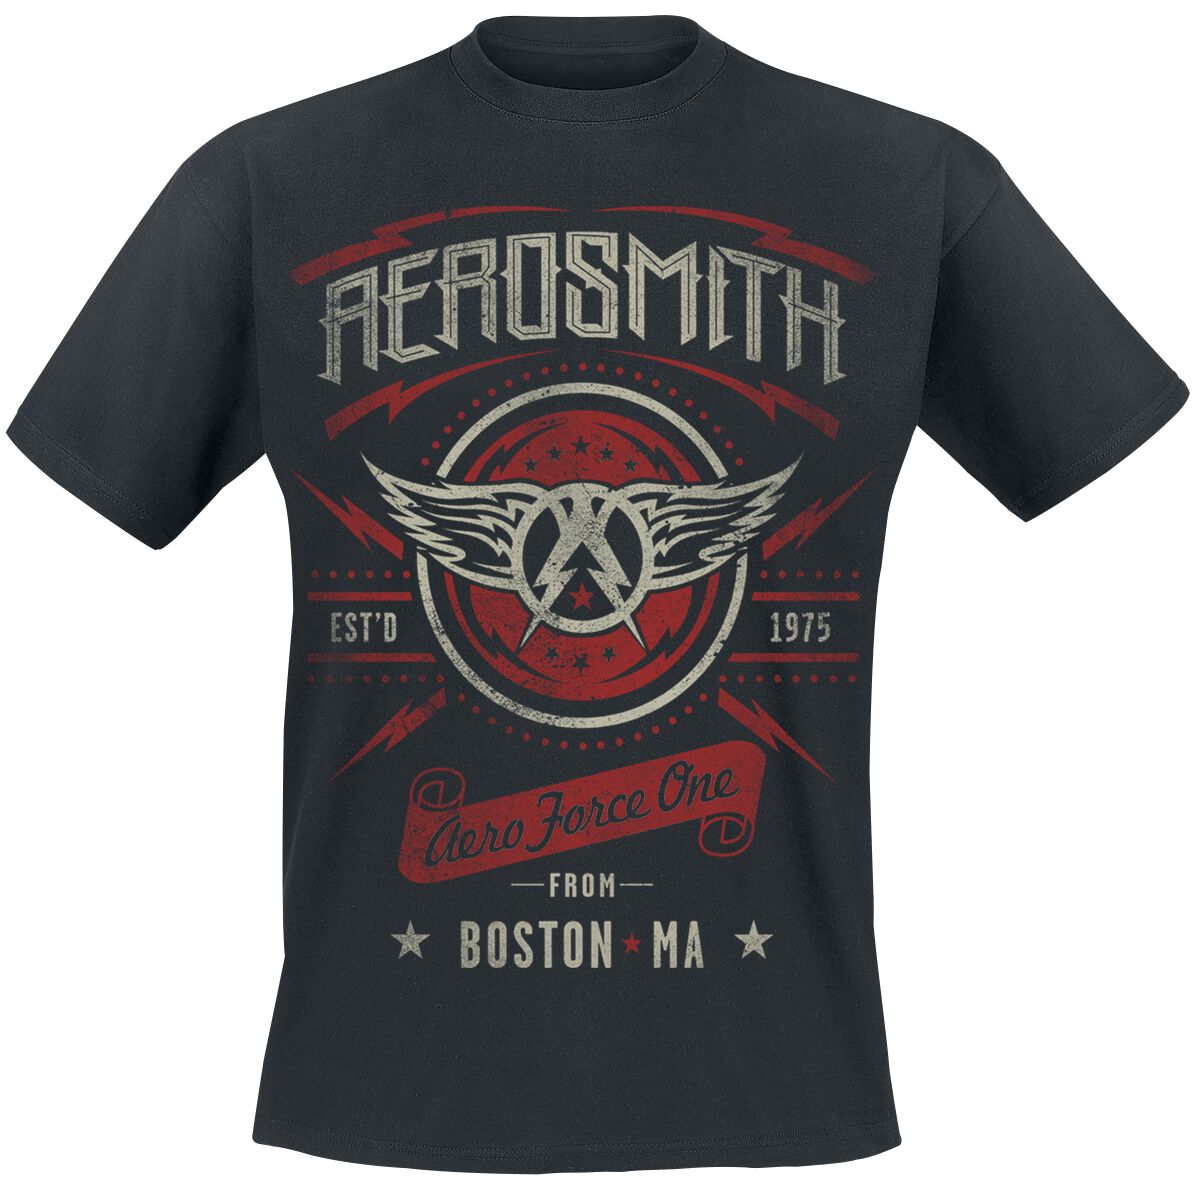 Aerosmith T-Shirt - Aero Force One - XL - für Männer - Größe XL - schwarz  - Lizenziertes Merchandise!